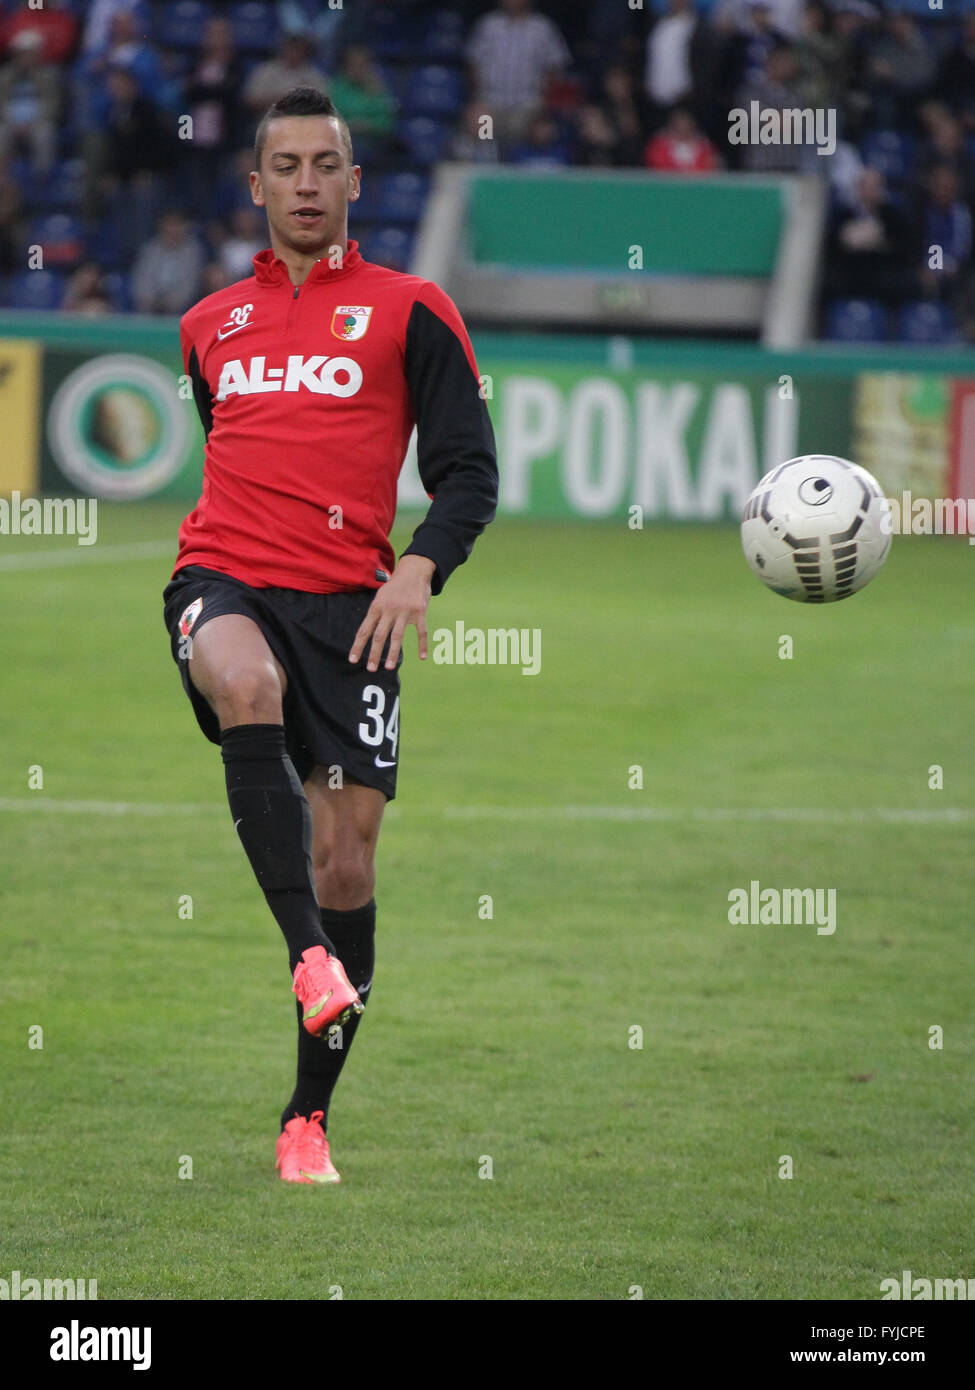 Nikola Djurdjic (FC Augsburg) Stock Photo